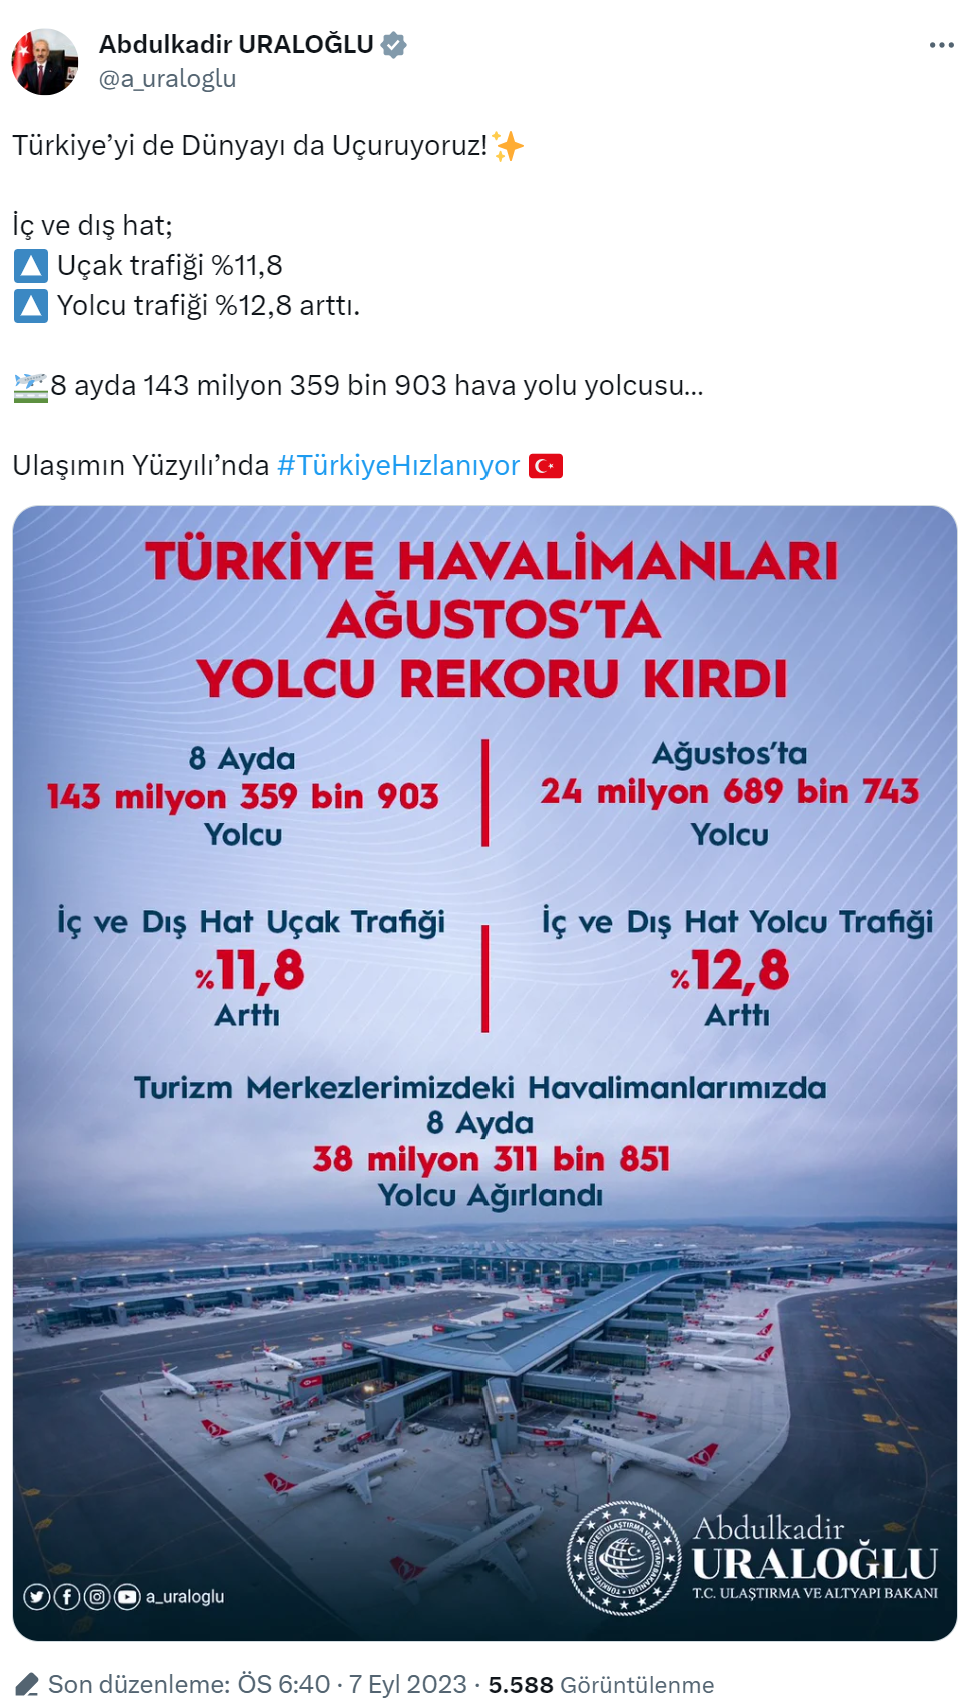 Türkiye Havalimanları ağustos ayında yolcu rekoru kırdı